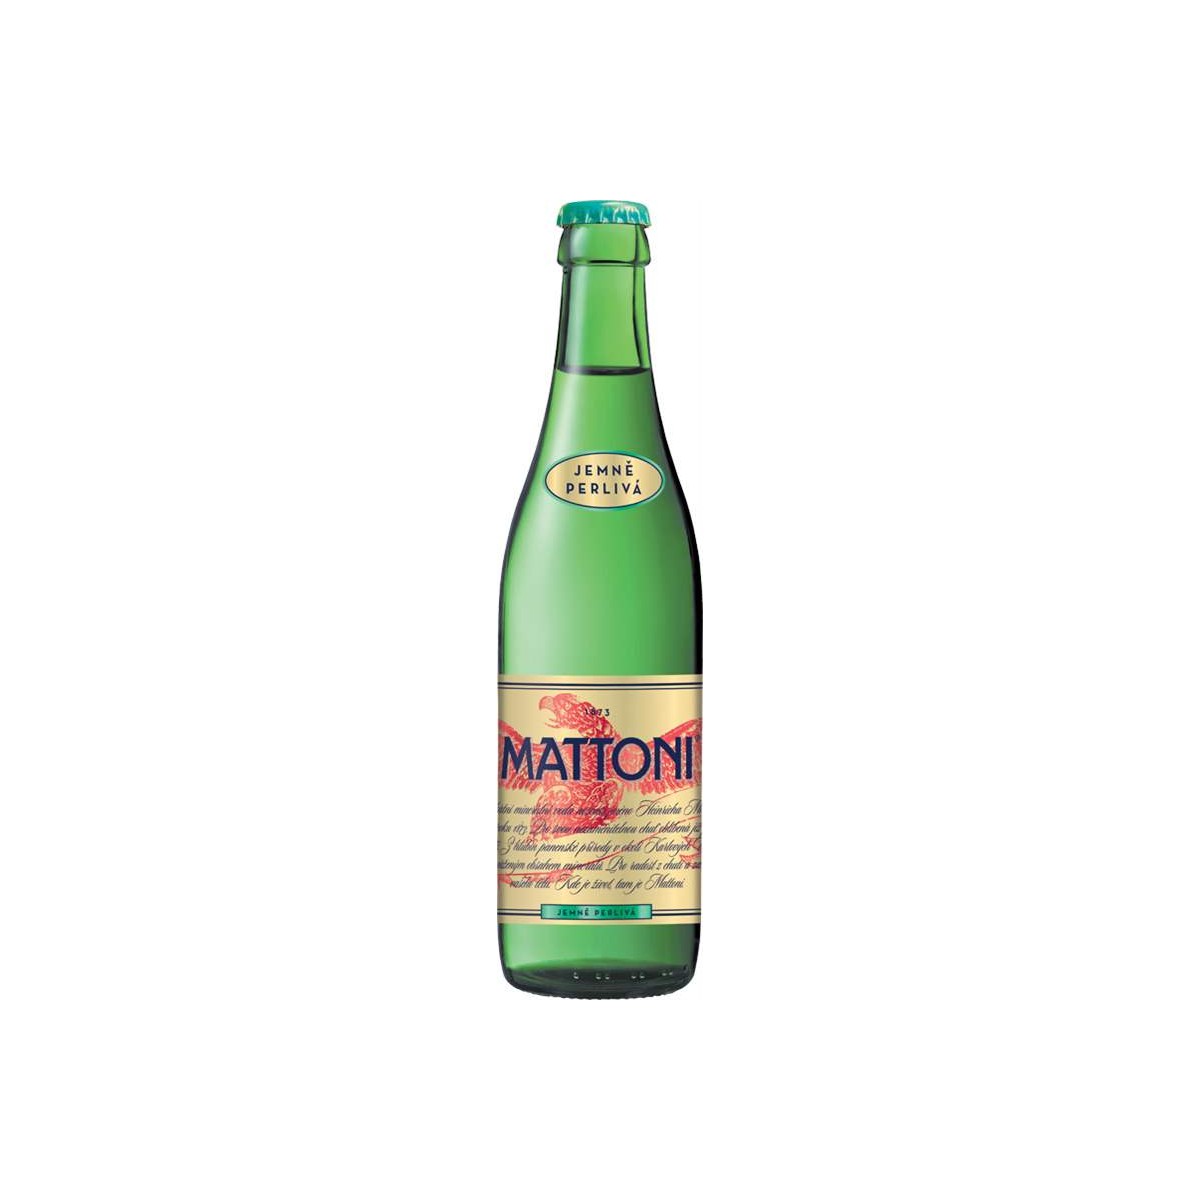 Mattoni jemně perlivá 0,33 - sklo